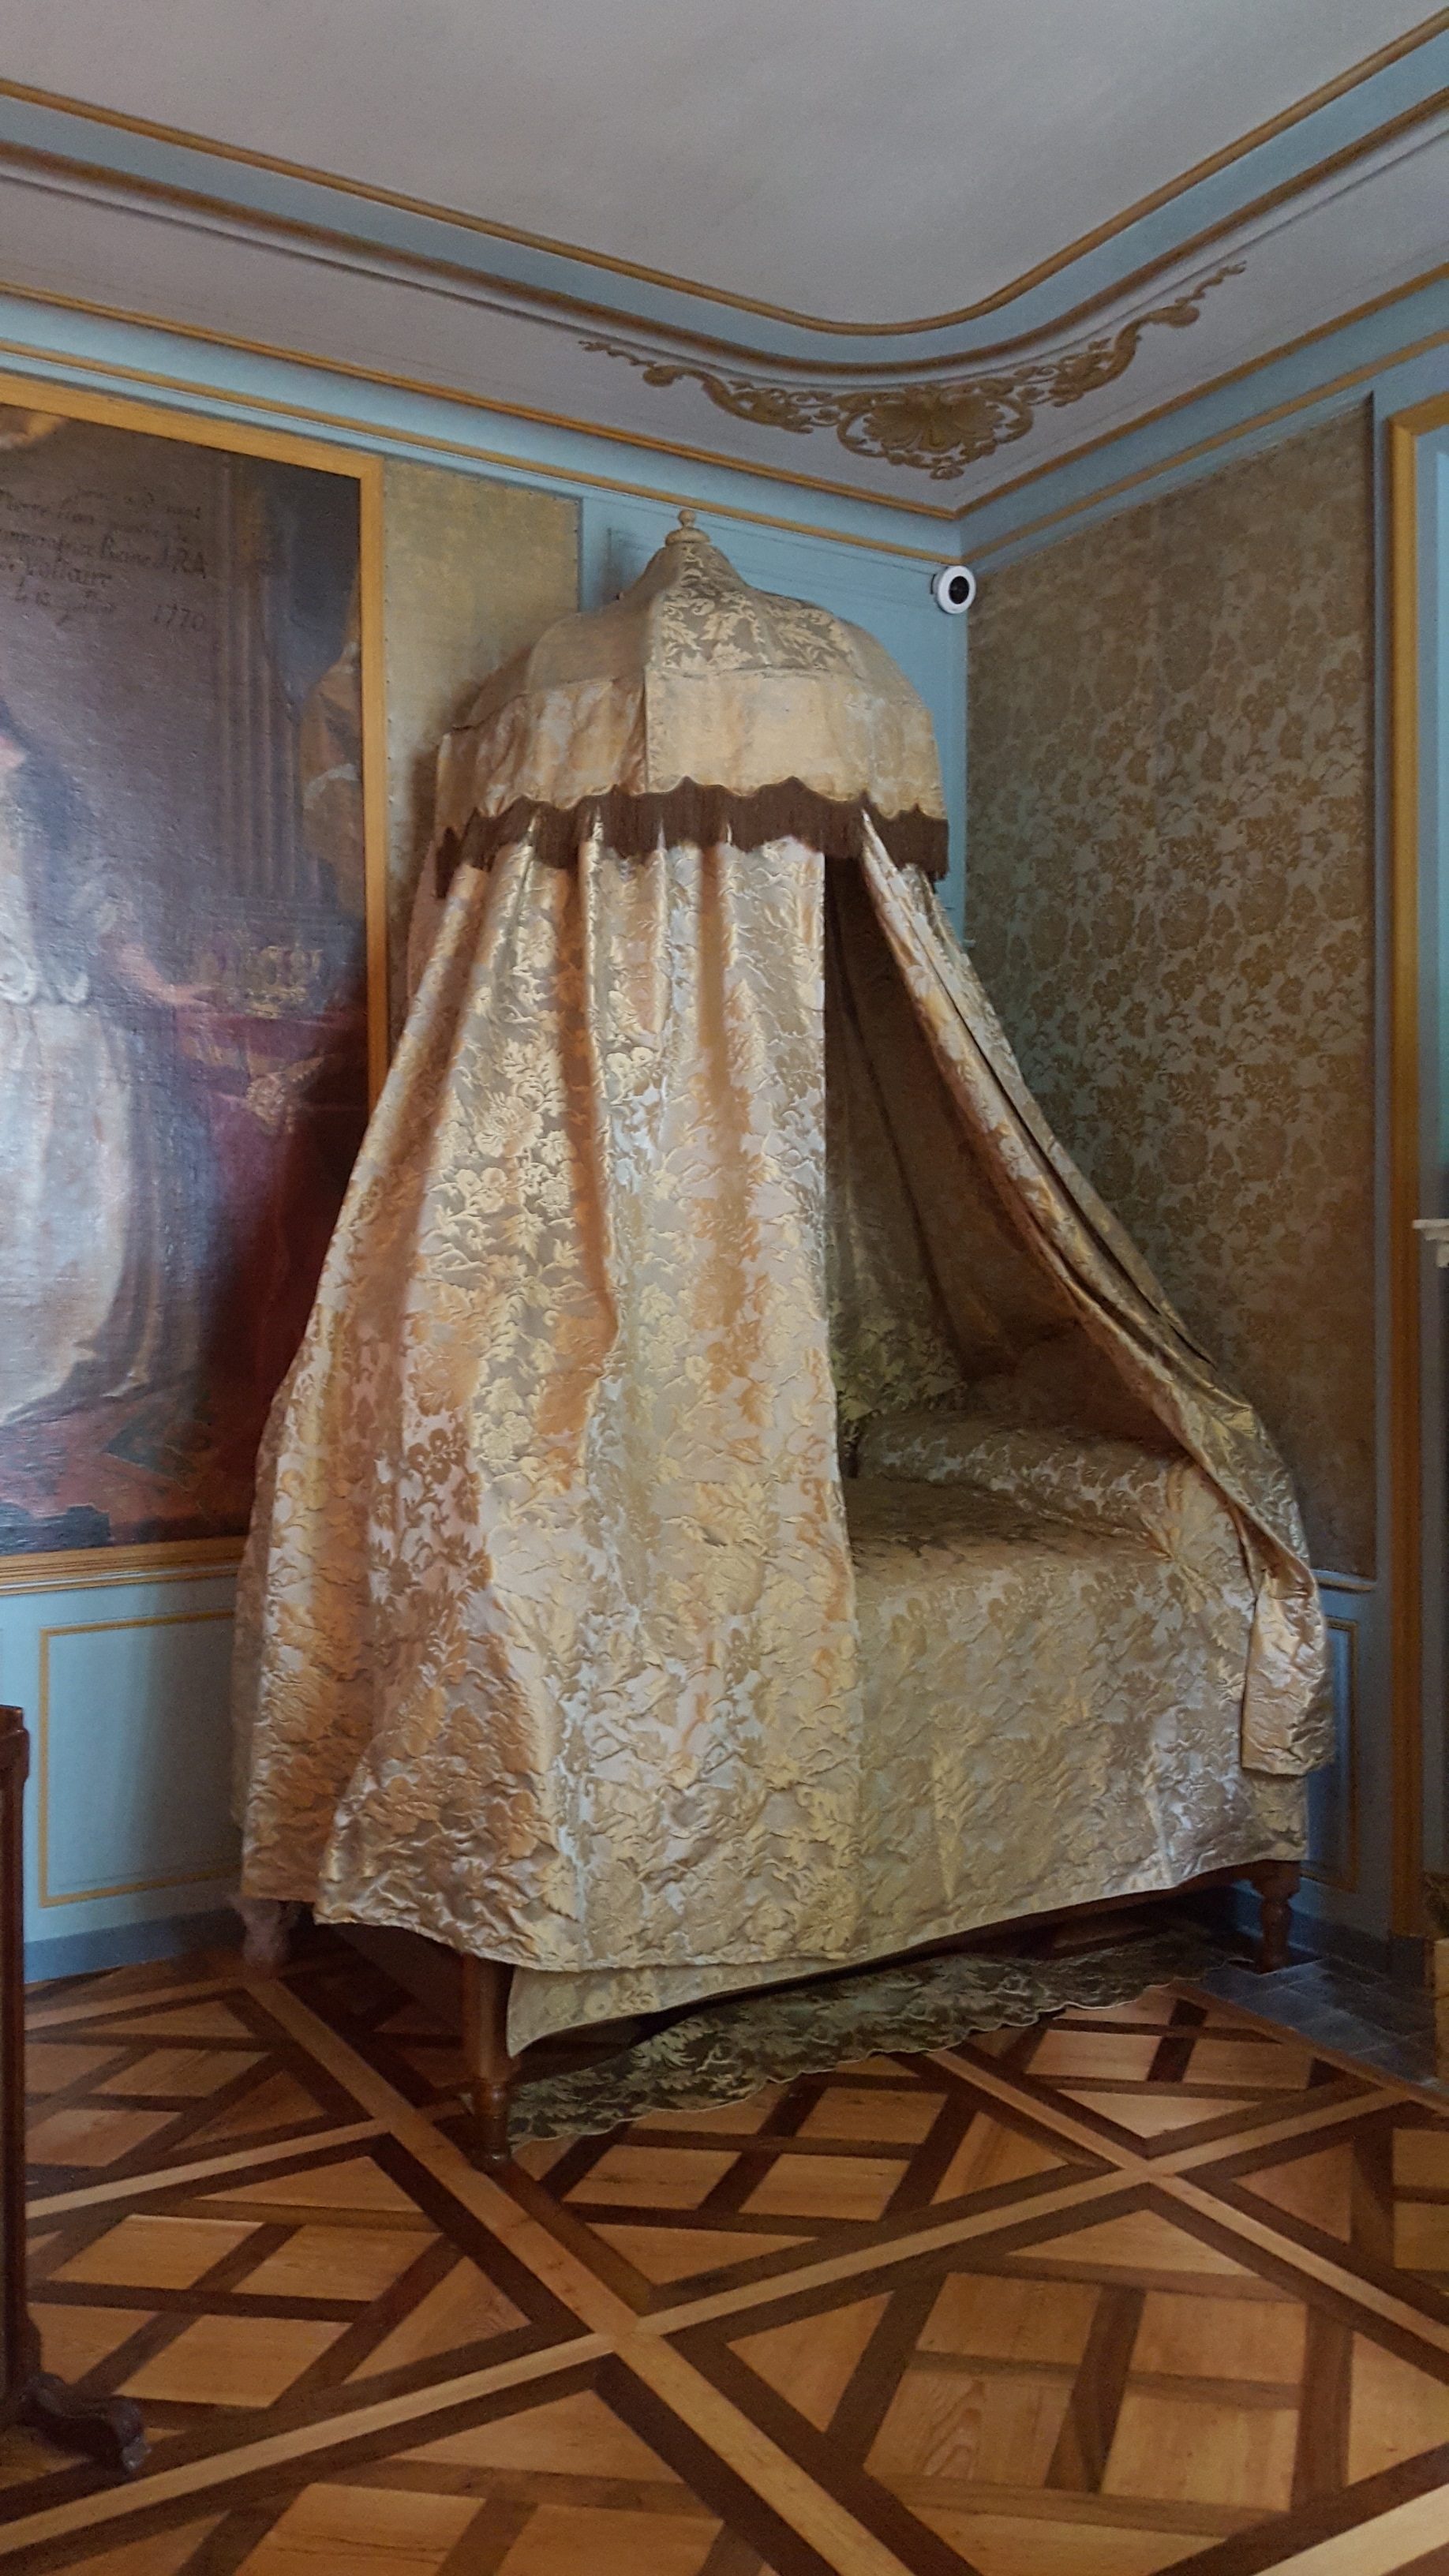 Une visite au Château de Voltaire/aufildeslieux.fr/ Chambre de Voltaire restaurée ©K.HIBBS